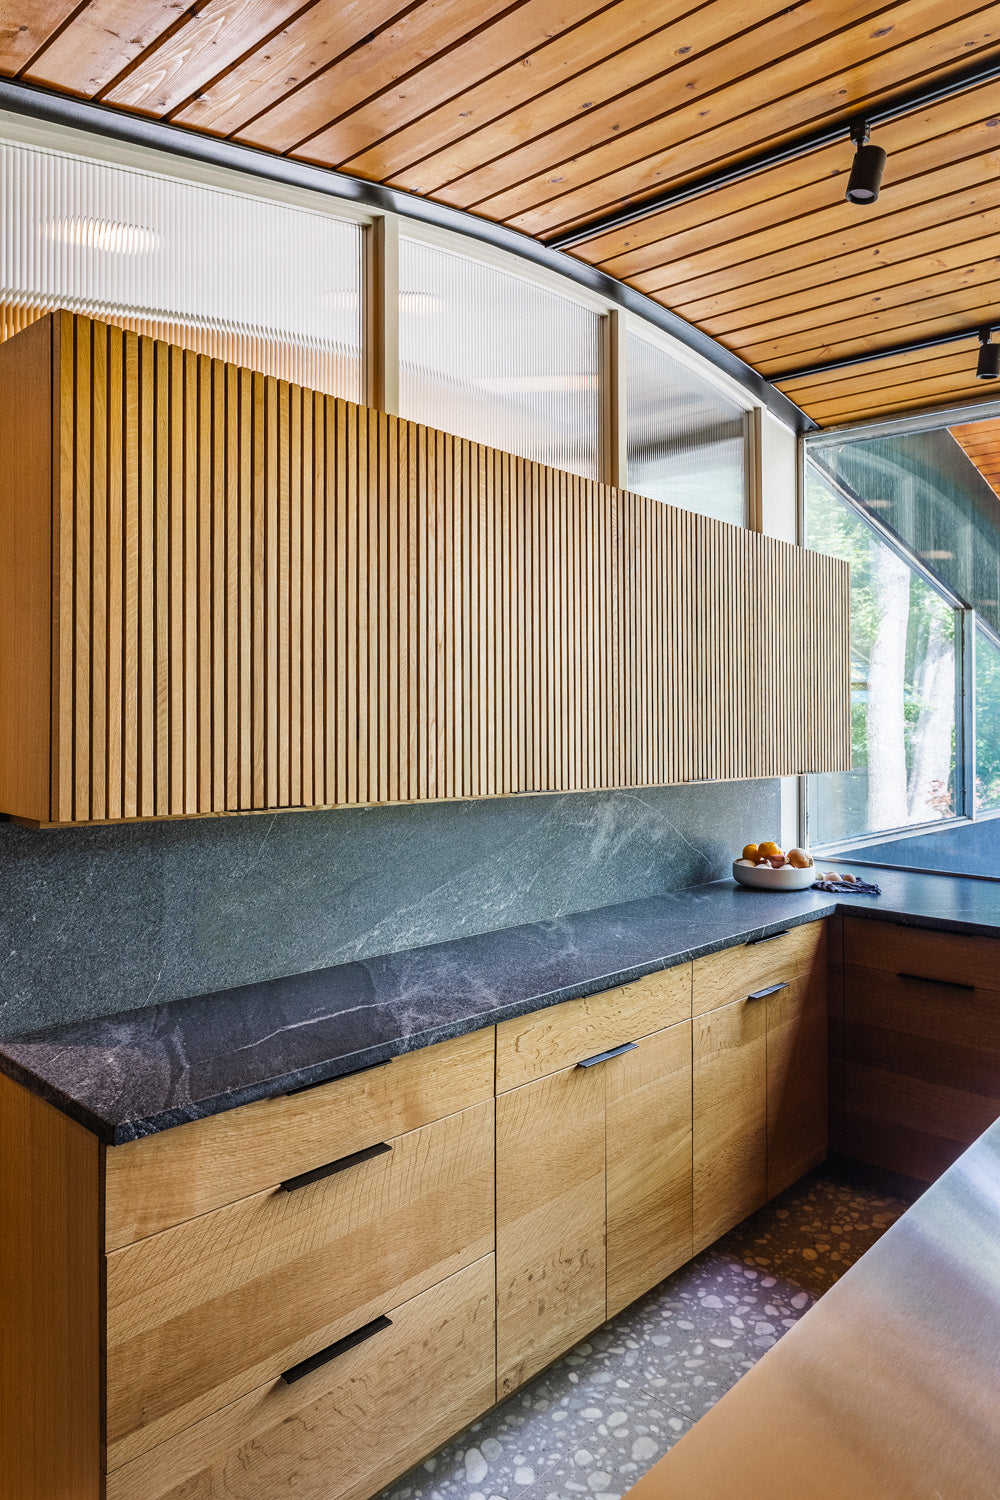 Midcentury modern kitchen cabinetry